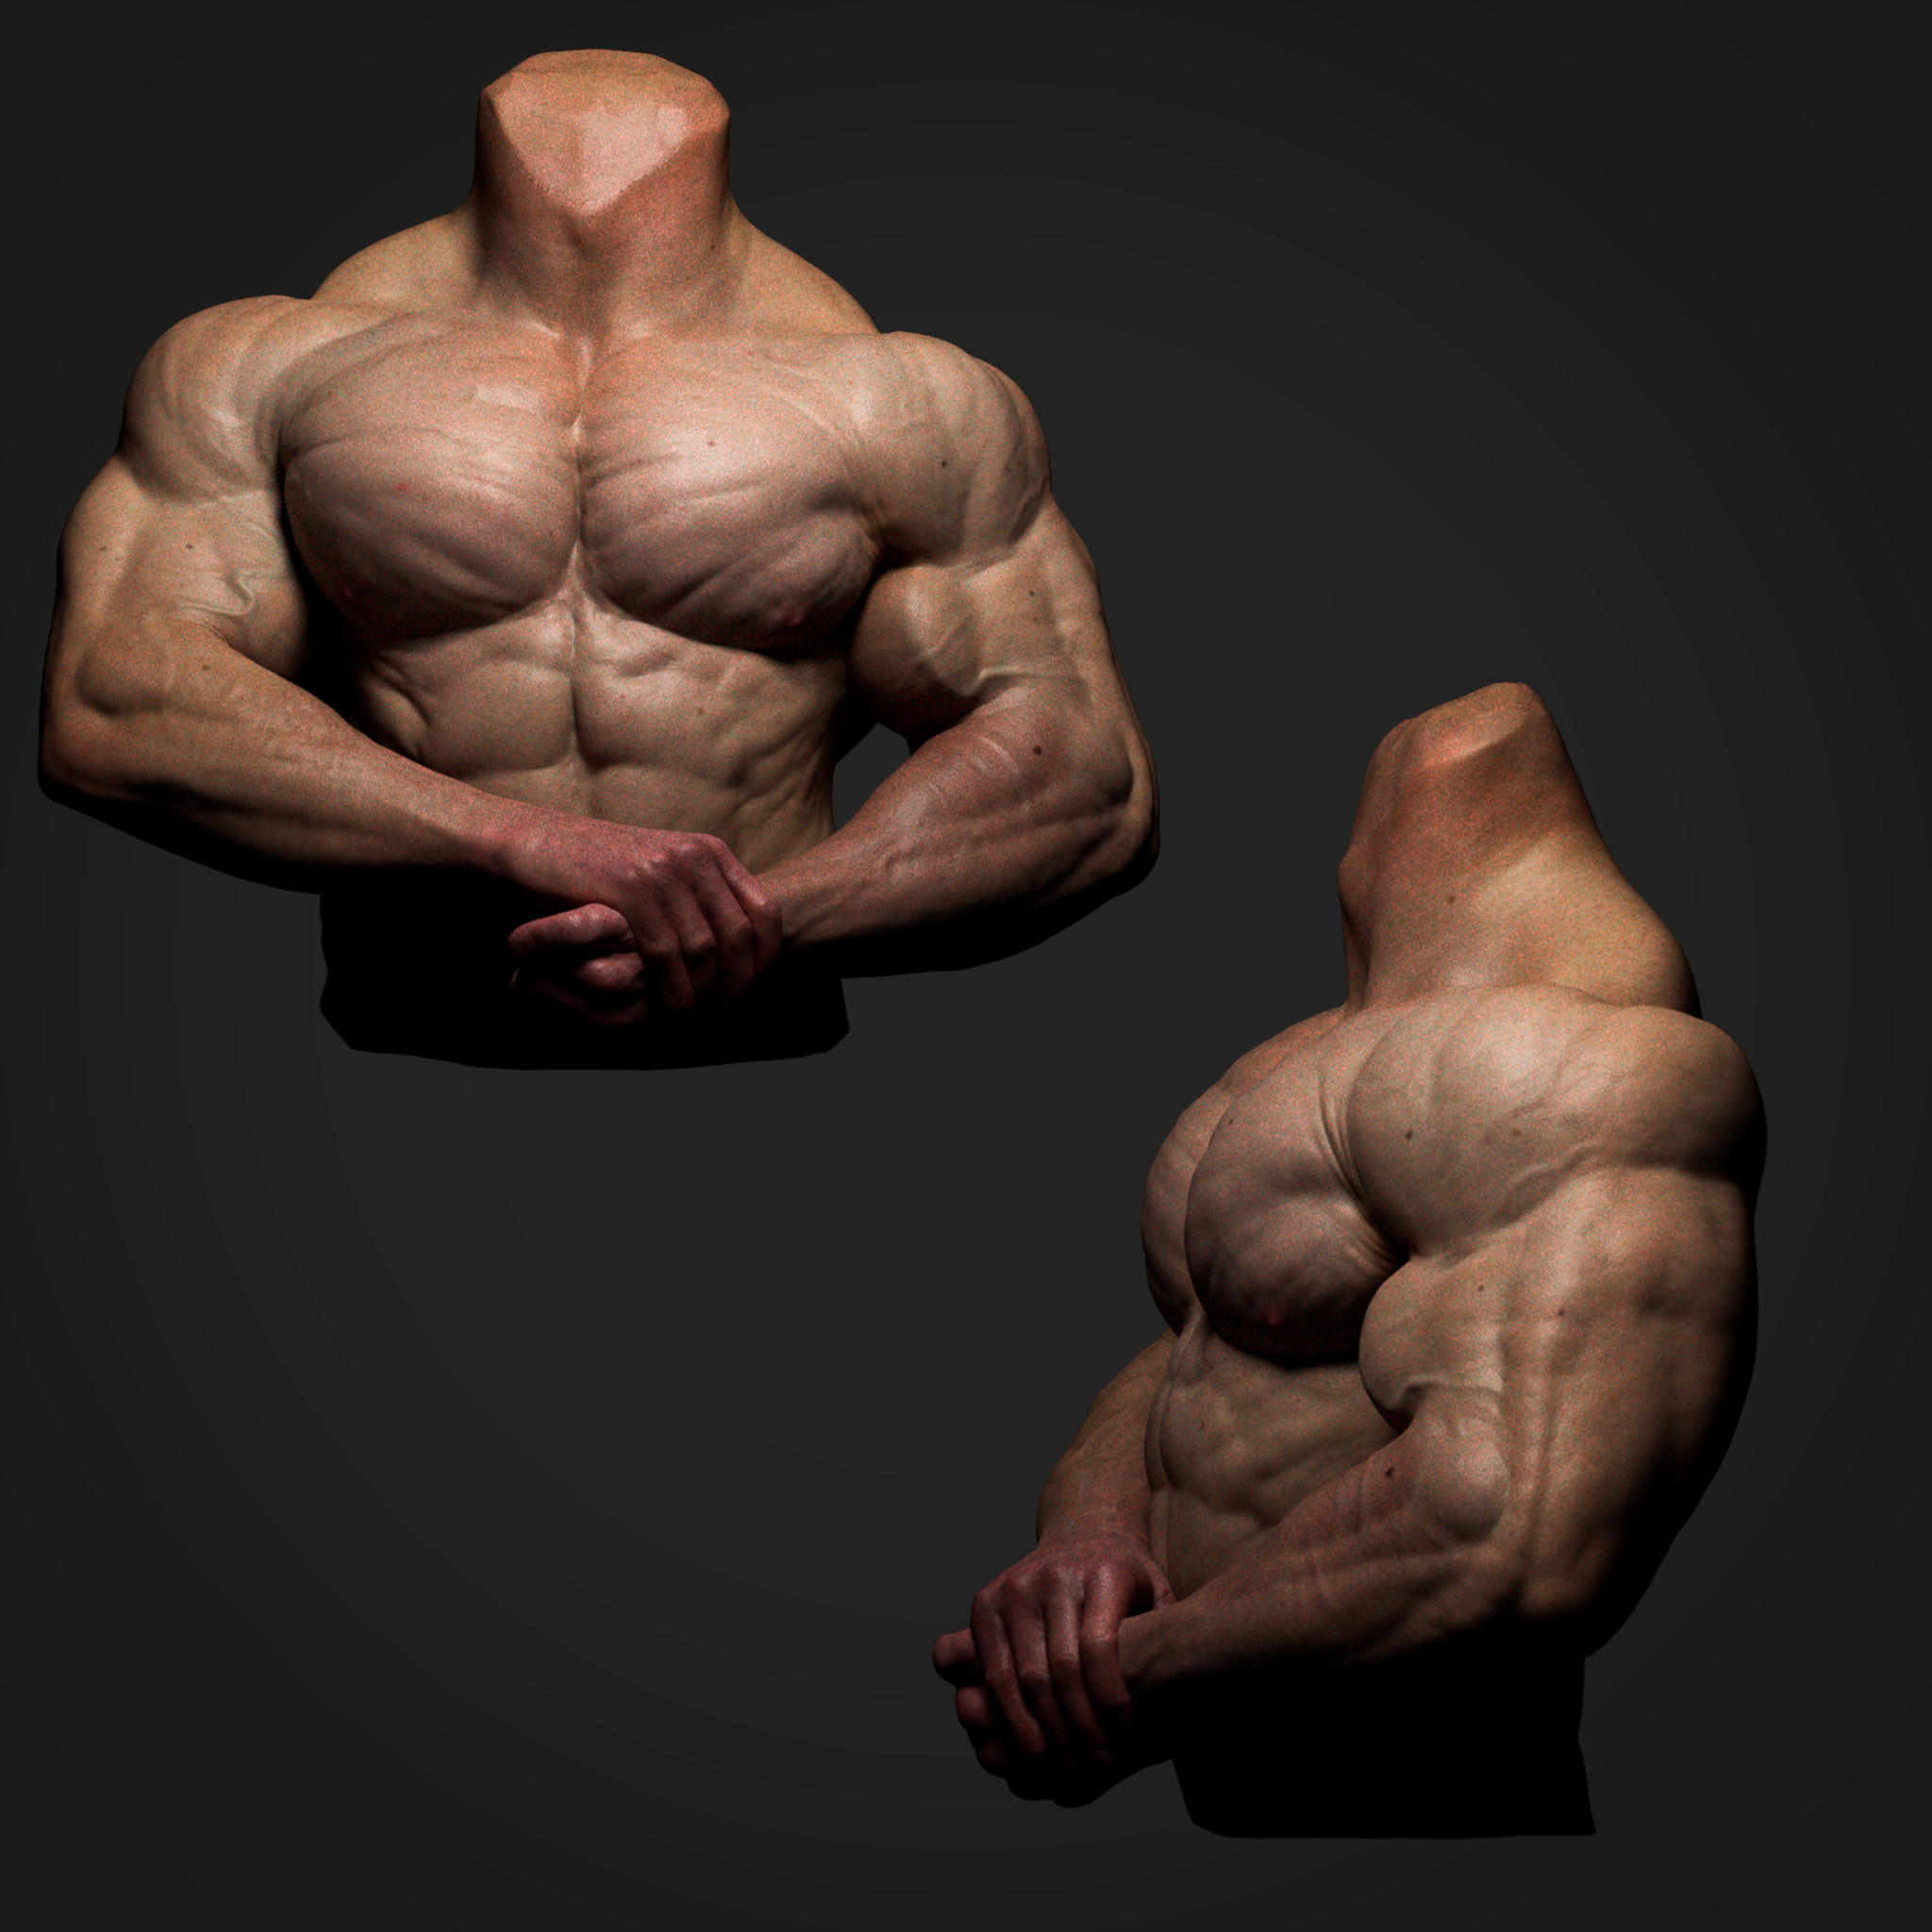 Zbrush anatomy study, muscles